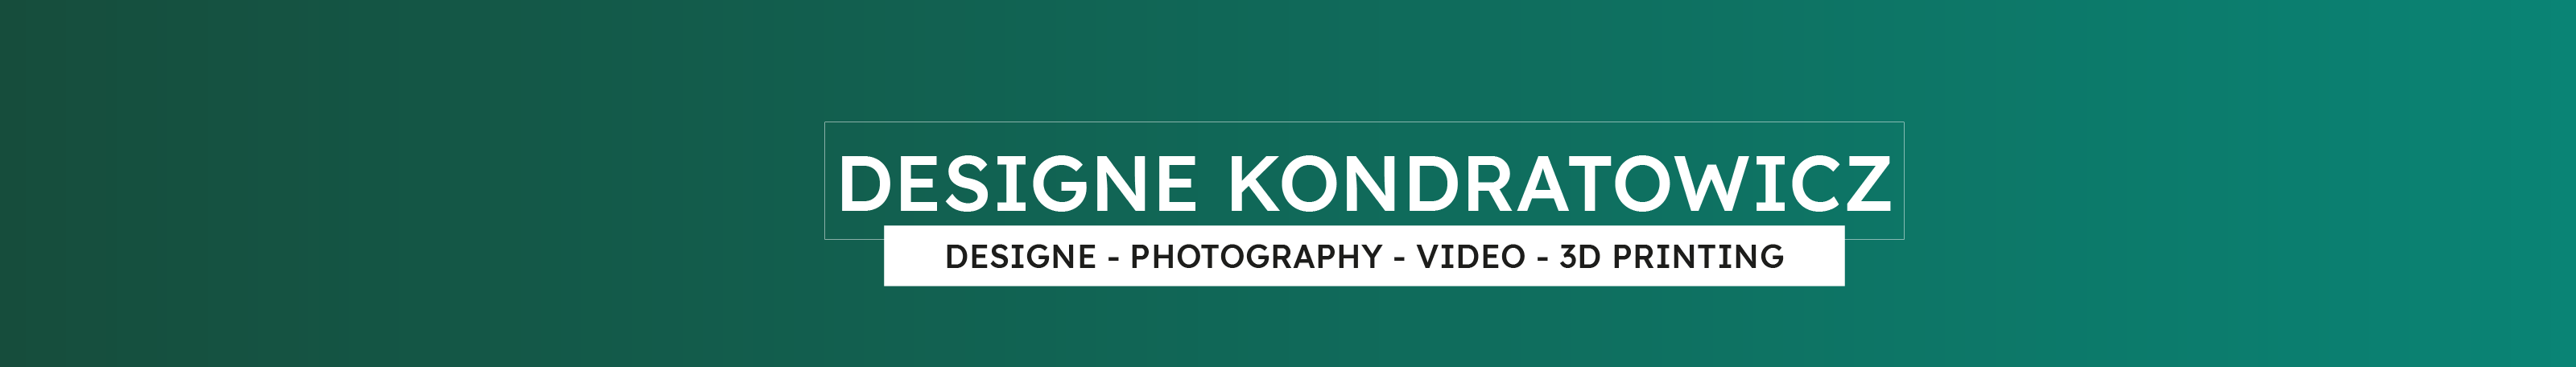 Marcin Kondratowicz's profile banner